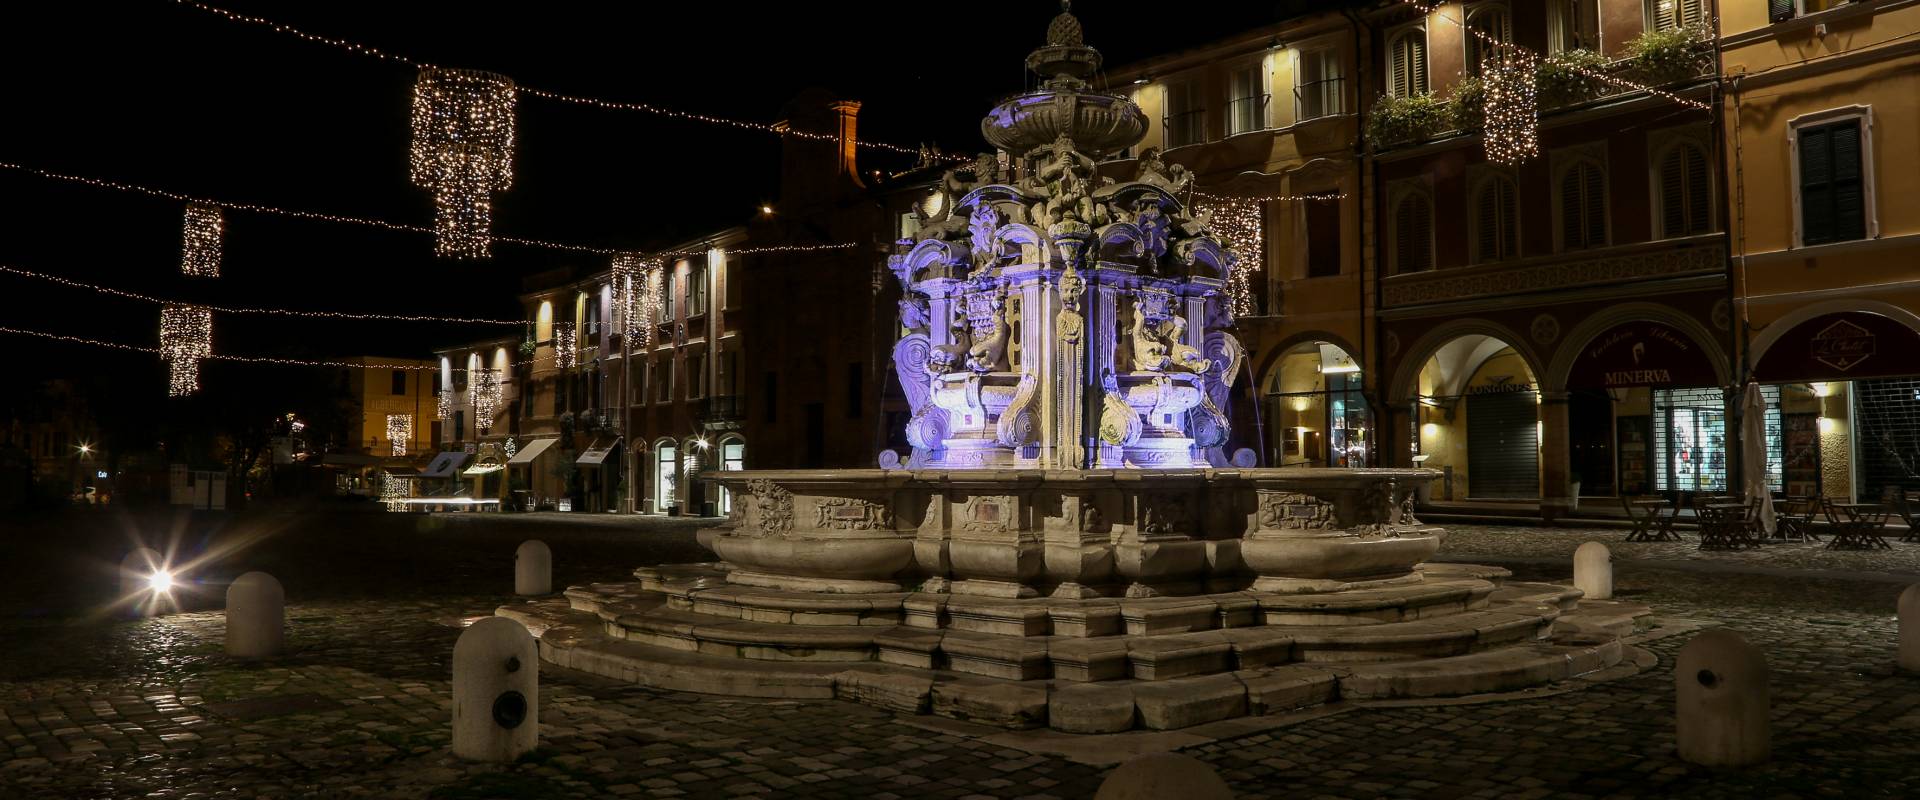 Fontana Masini - IMG 3688 photo by Pierpaoloturchi